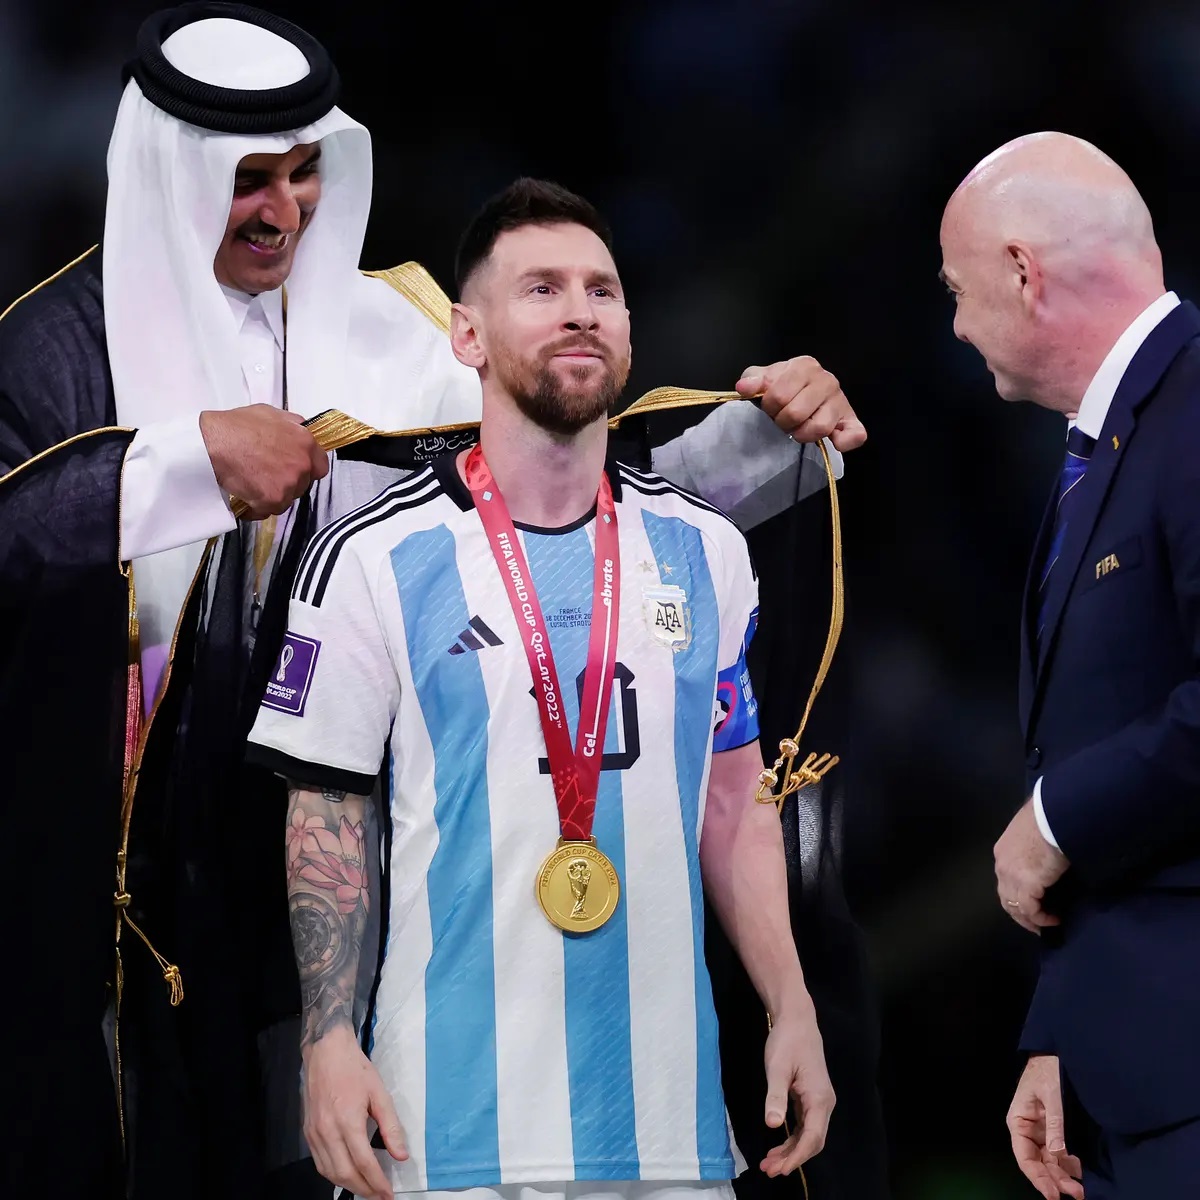 Chiêm ngưỡng ảnh Messi vang danh cùng chiếc cúp vàng danh giá, với nụ cười hạnh phúc trên môi và tinh thần chiến thắng đầy quyết tâm. Bạn không nên bỏ qua cơ hội xem hình ảnh đầy cảm xúc này.